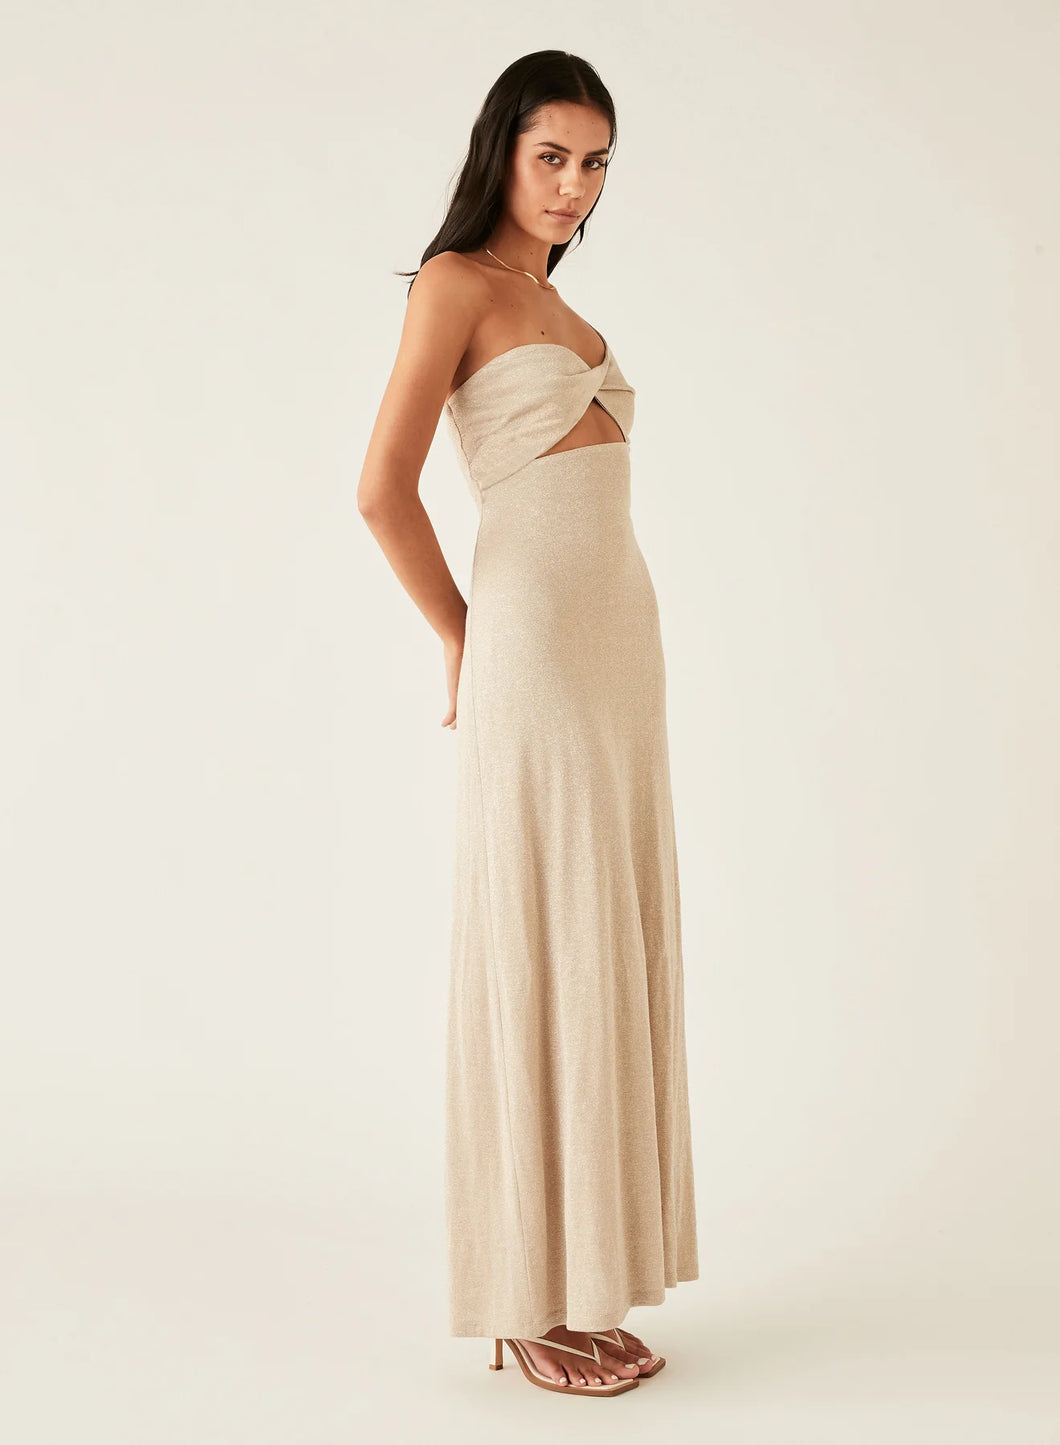 Athena Dress | Esmaee